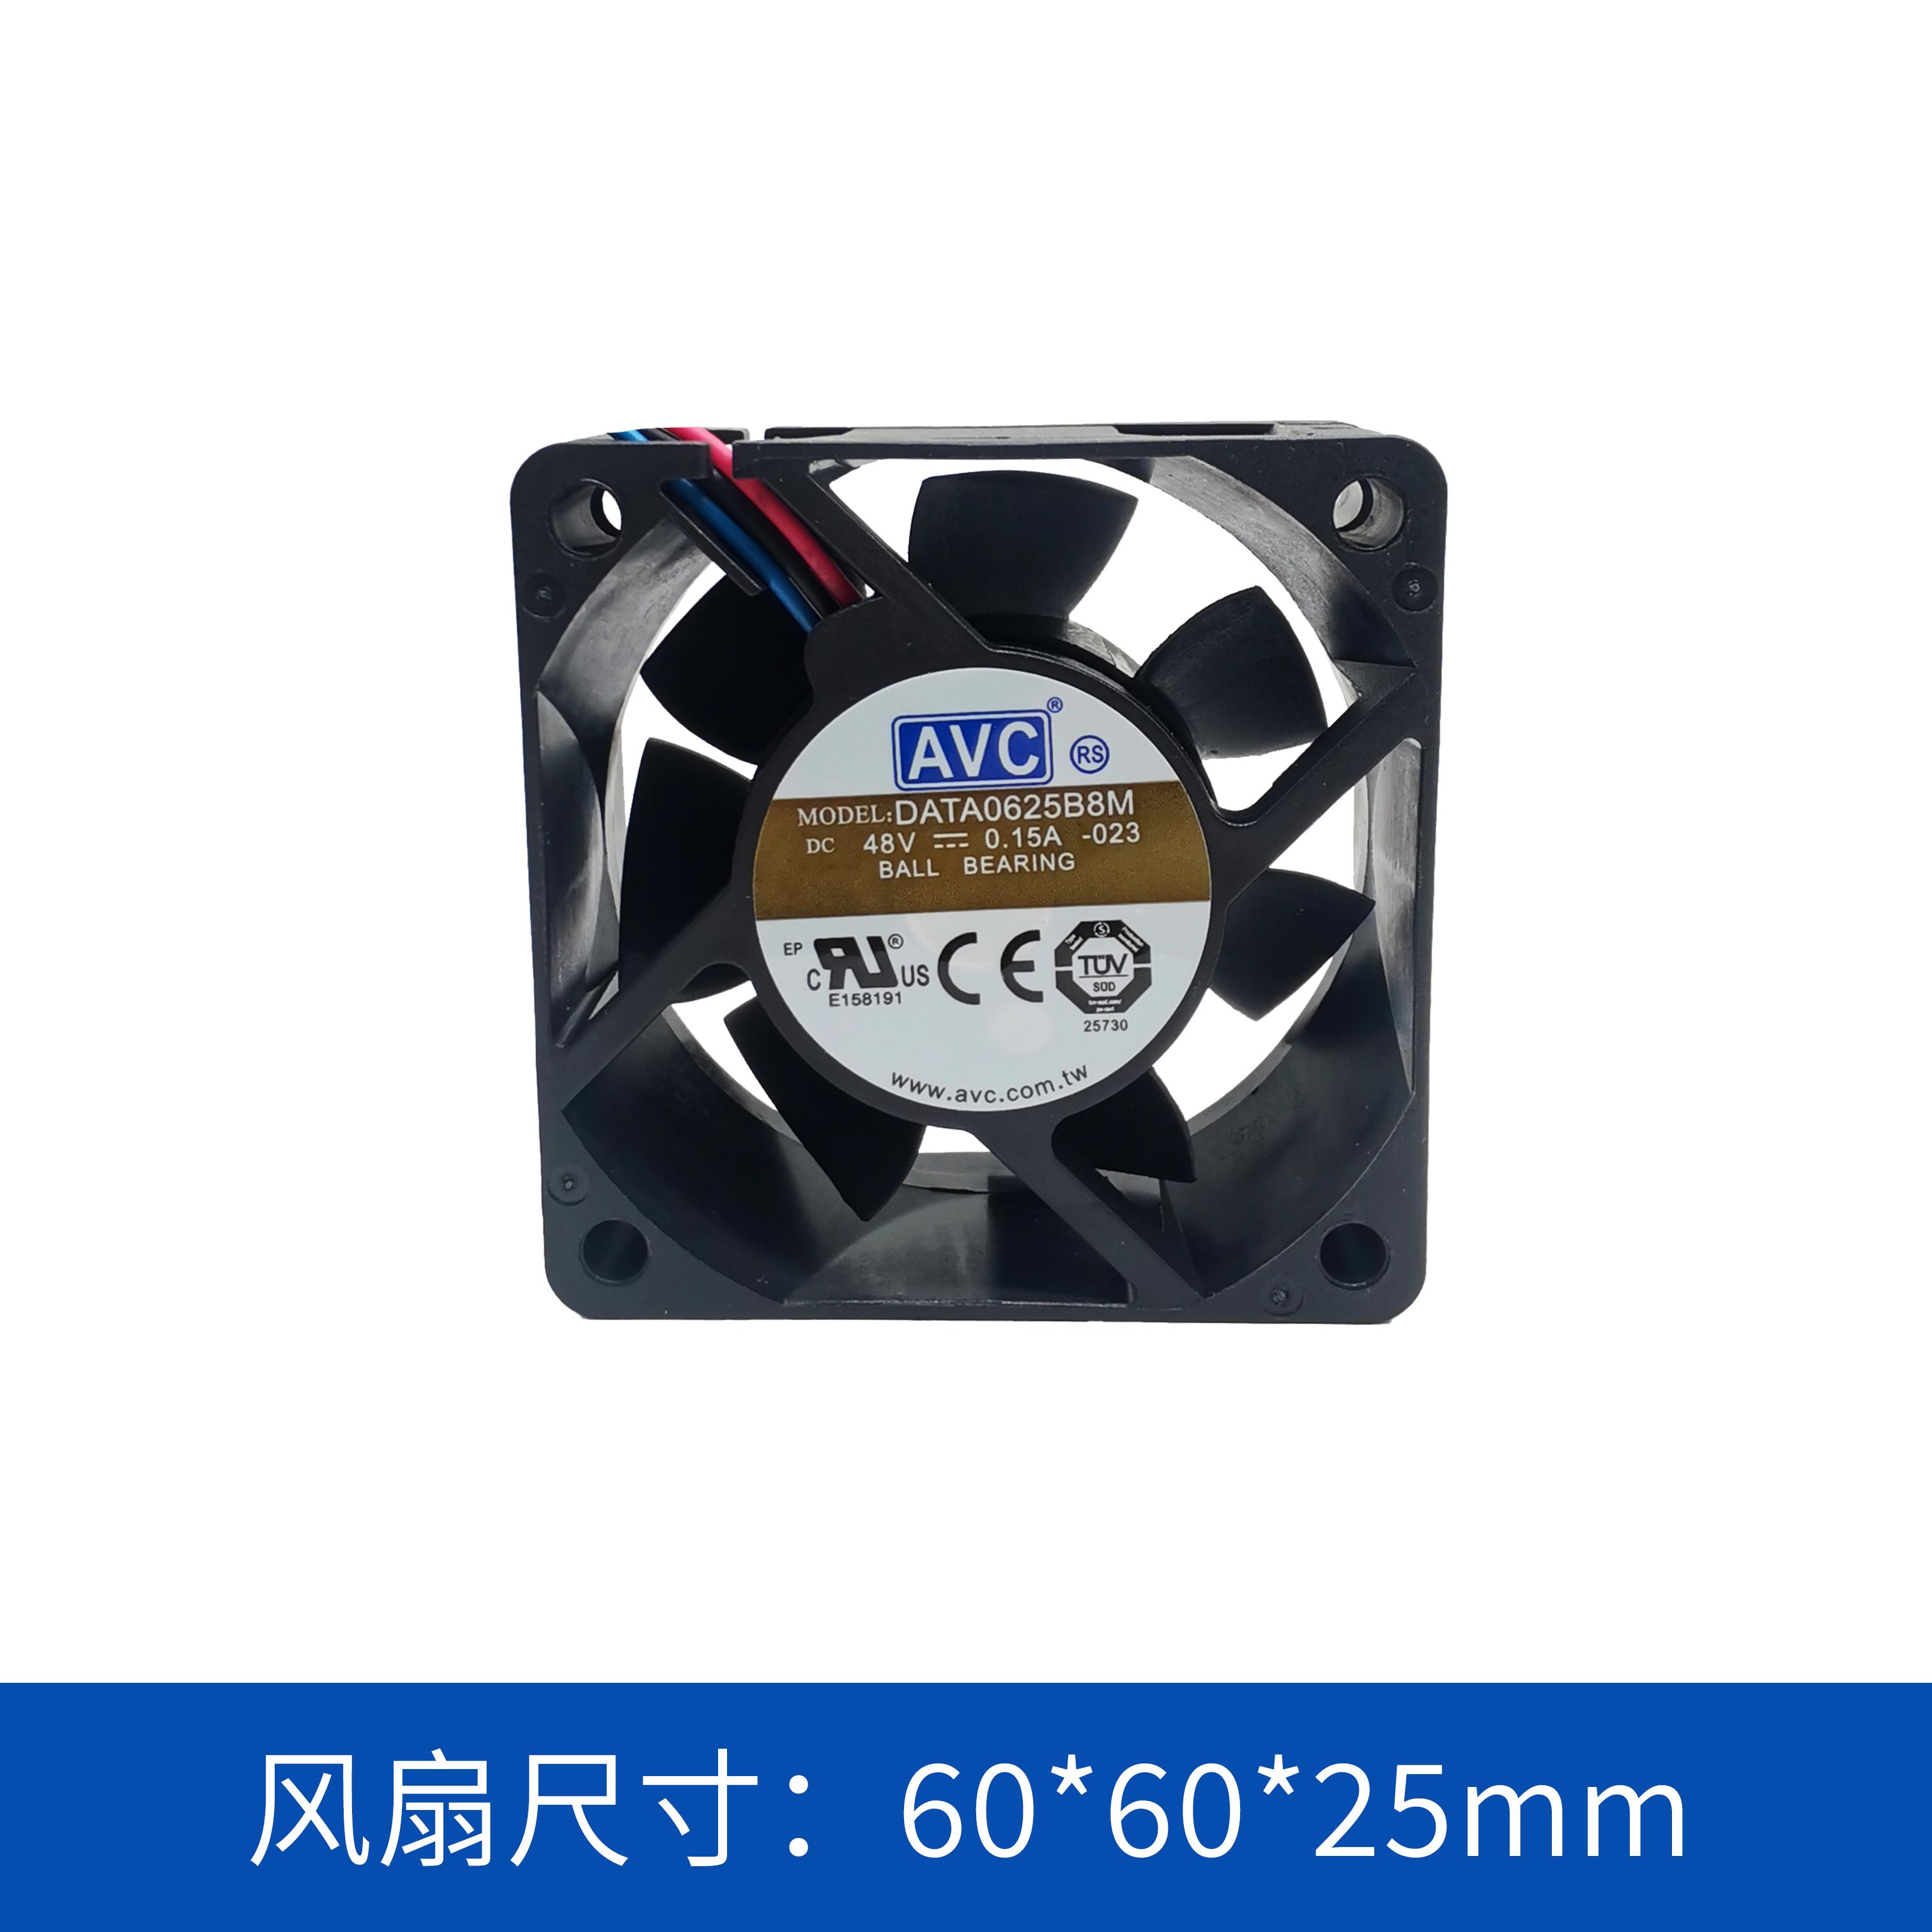 奇宏avc6025散热风扇DATA0625B8M023低功耗低噪音48V轴流风扇